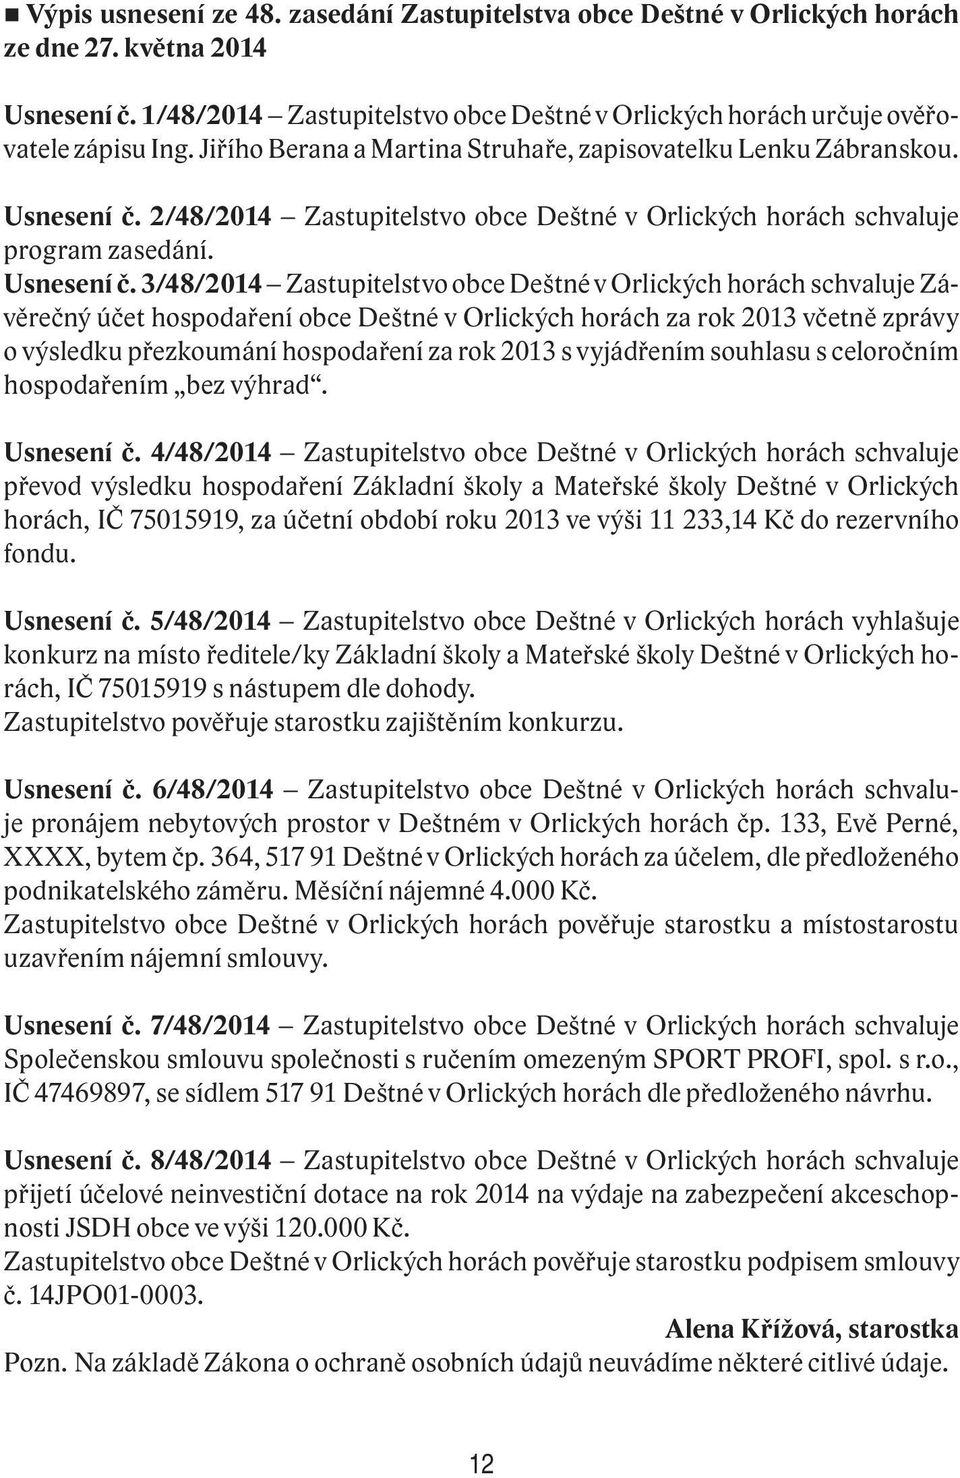 2/48/2014 Zastupitelstvo obce Deštné v Orlických horách schvaluje program zasedání. Usnesení č.